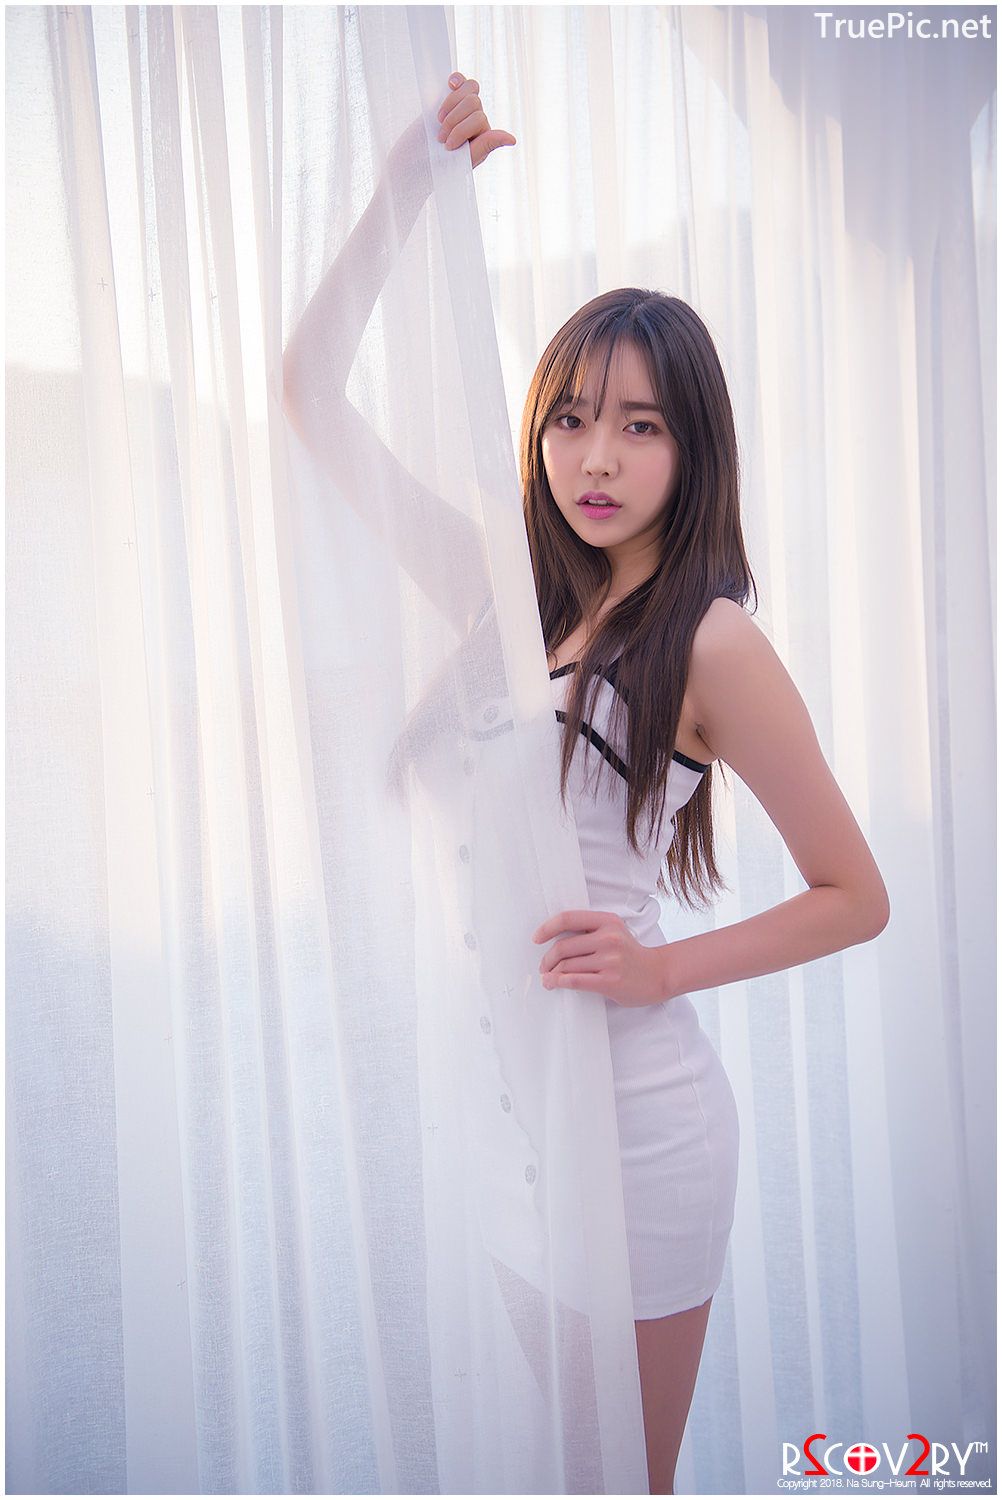 Image-Korean-Hot-Model-Go-Eun-Yang-Indoor-Photoshoot-Collection-TruePic.net- Picture-36